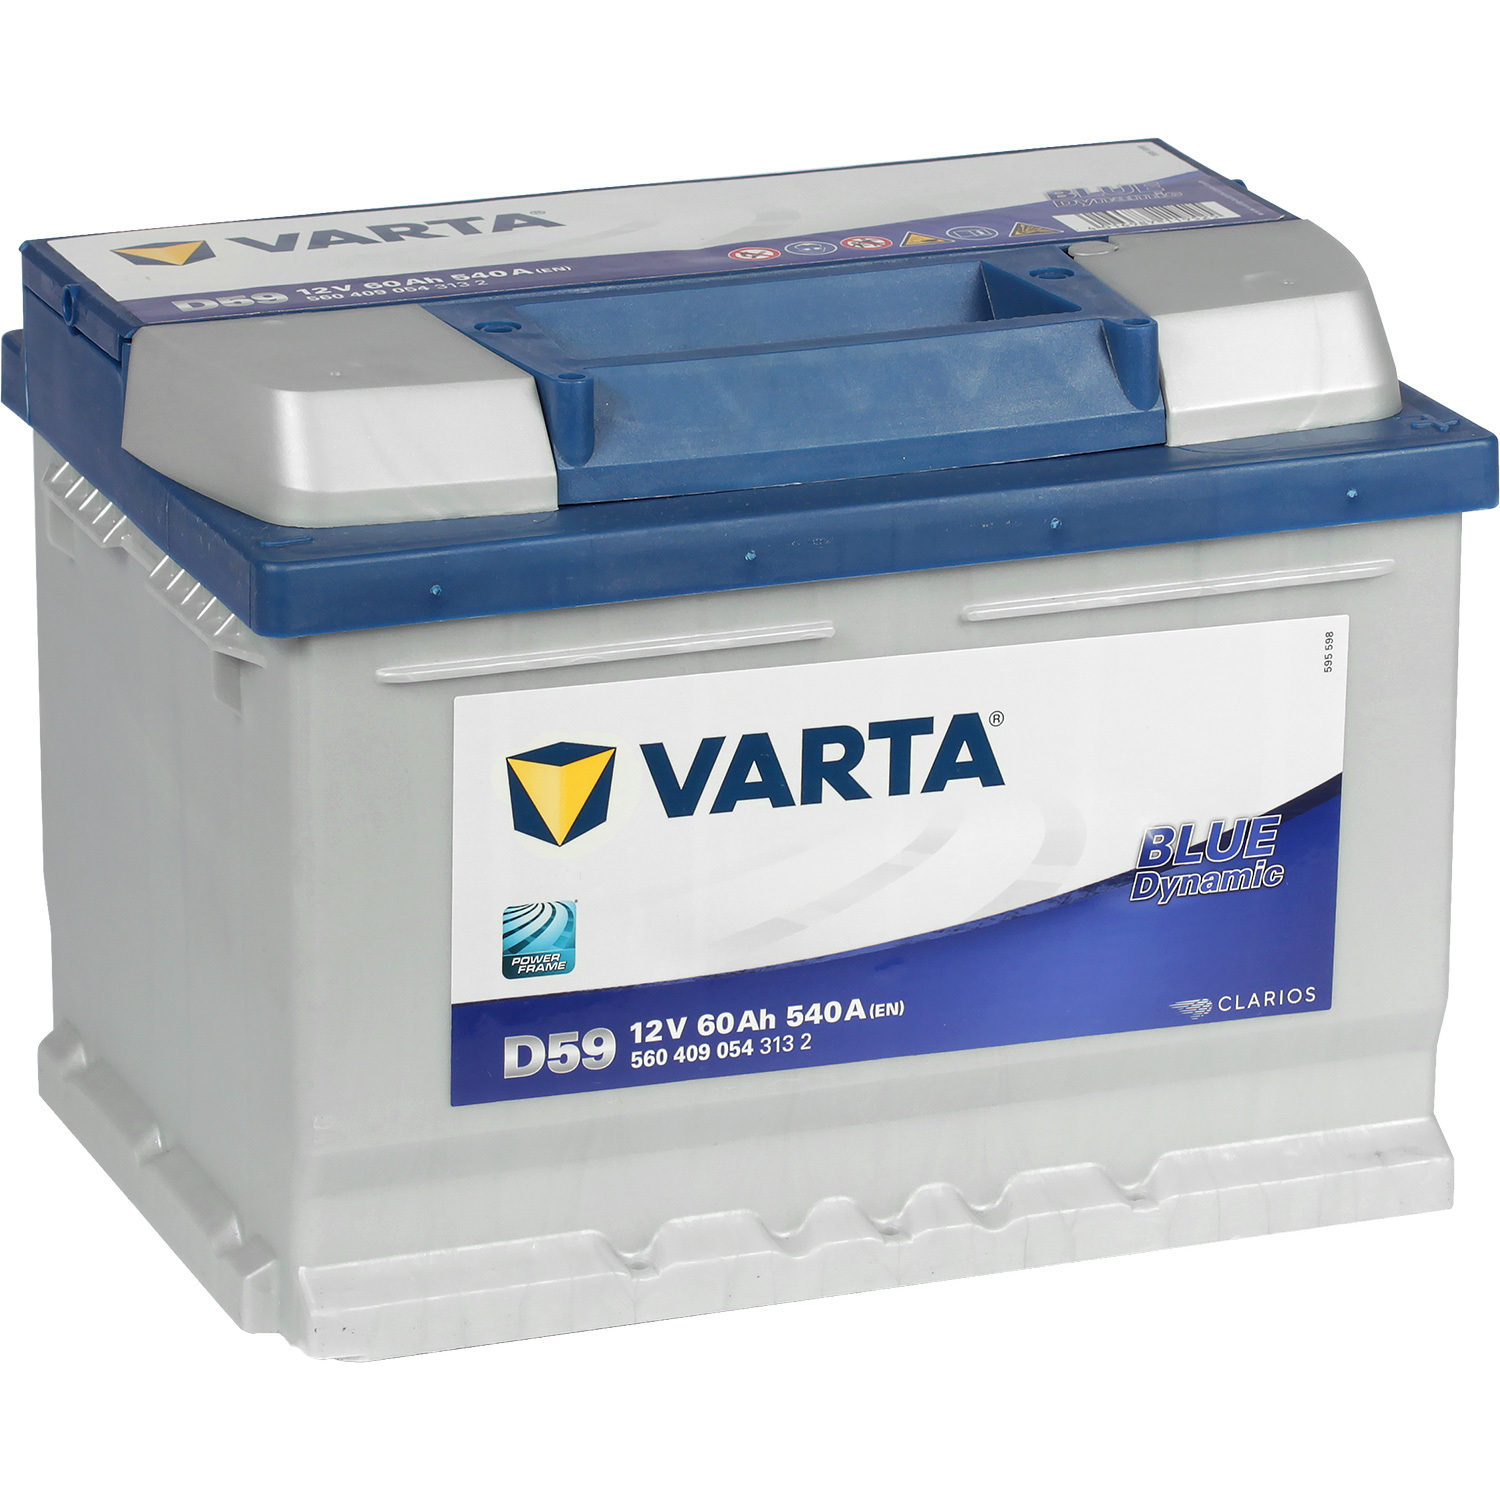 Varta Автомобильный аккумулятор Varta Blue Dynamic D59 60 Ач обратная полярность LB2 цена и фото